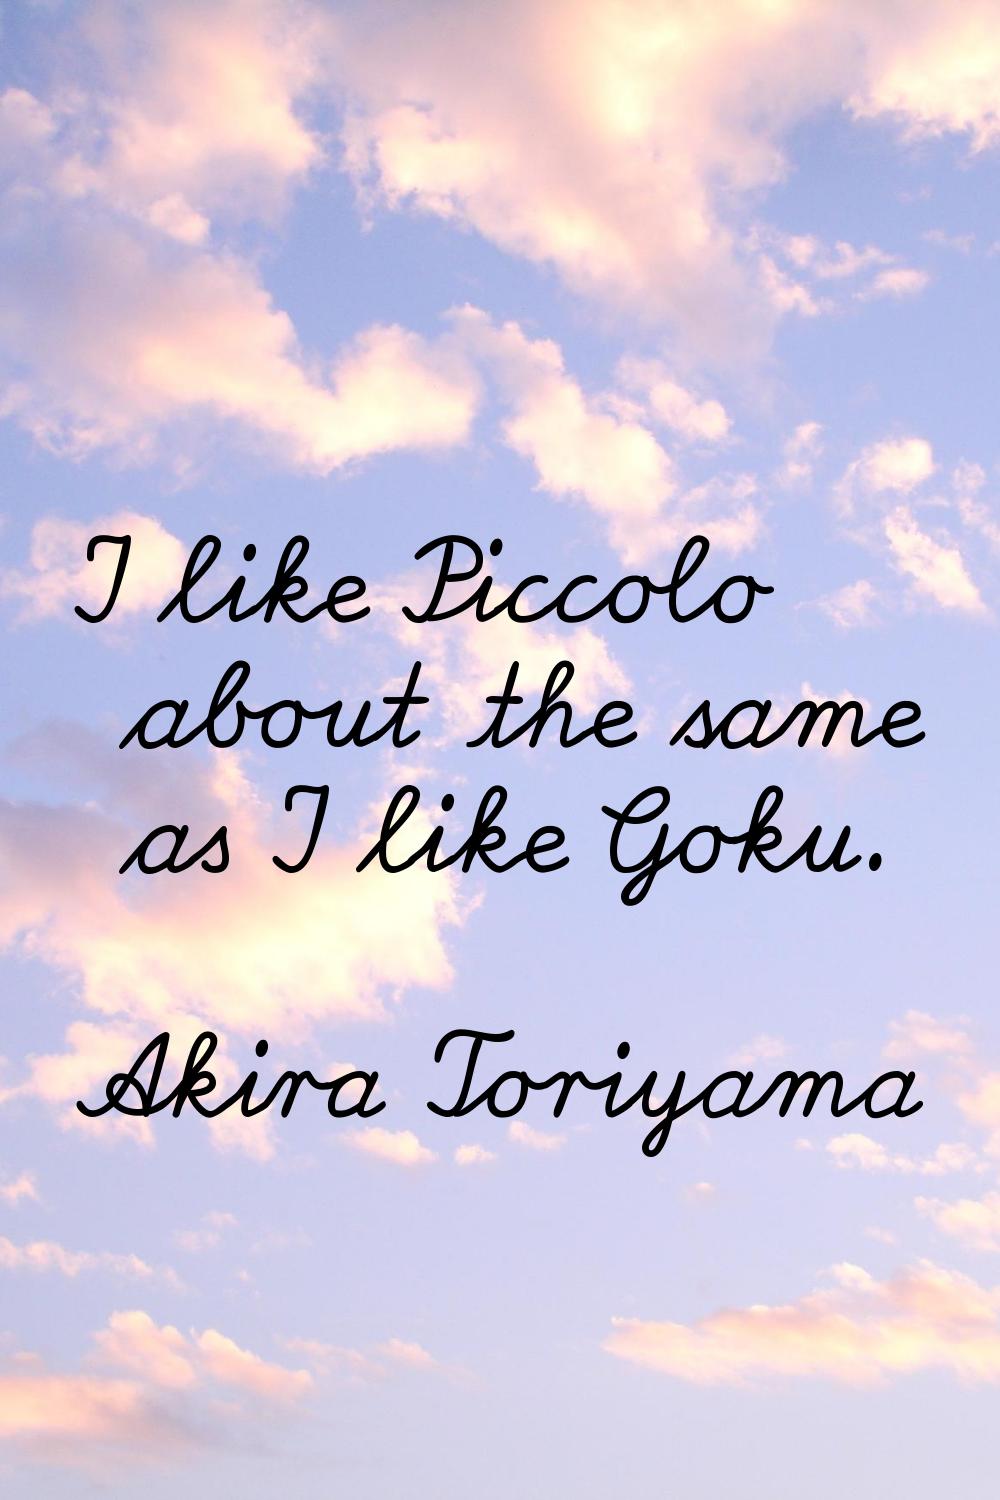 I like Piccolo about the same as I like Goku.